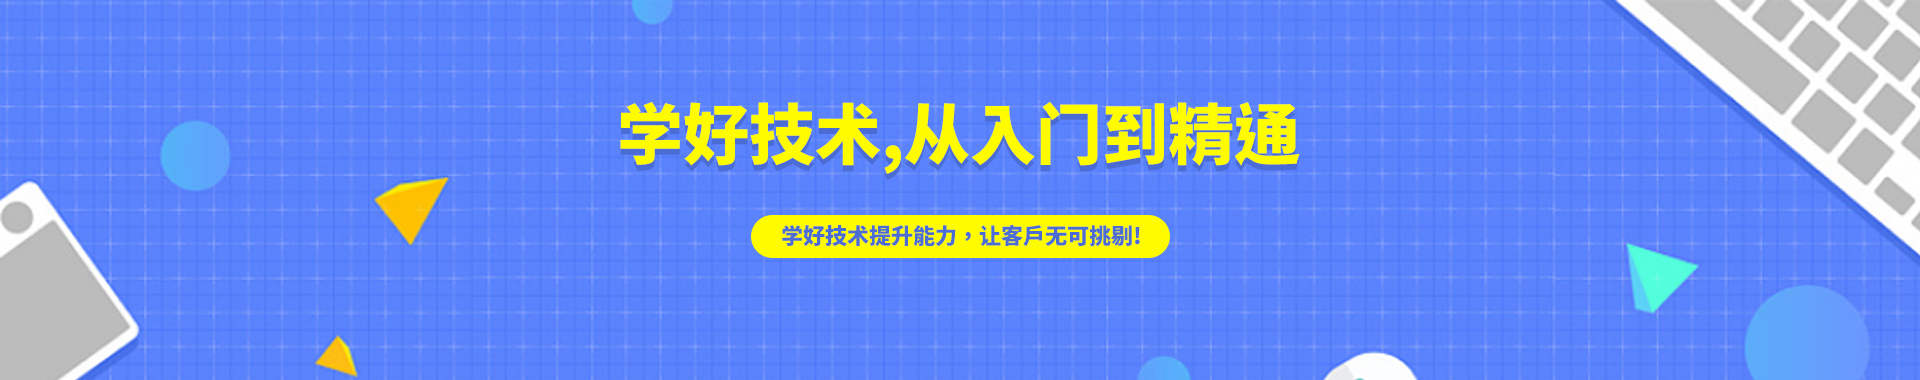 上海育界数码科技培训学校